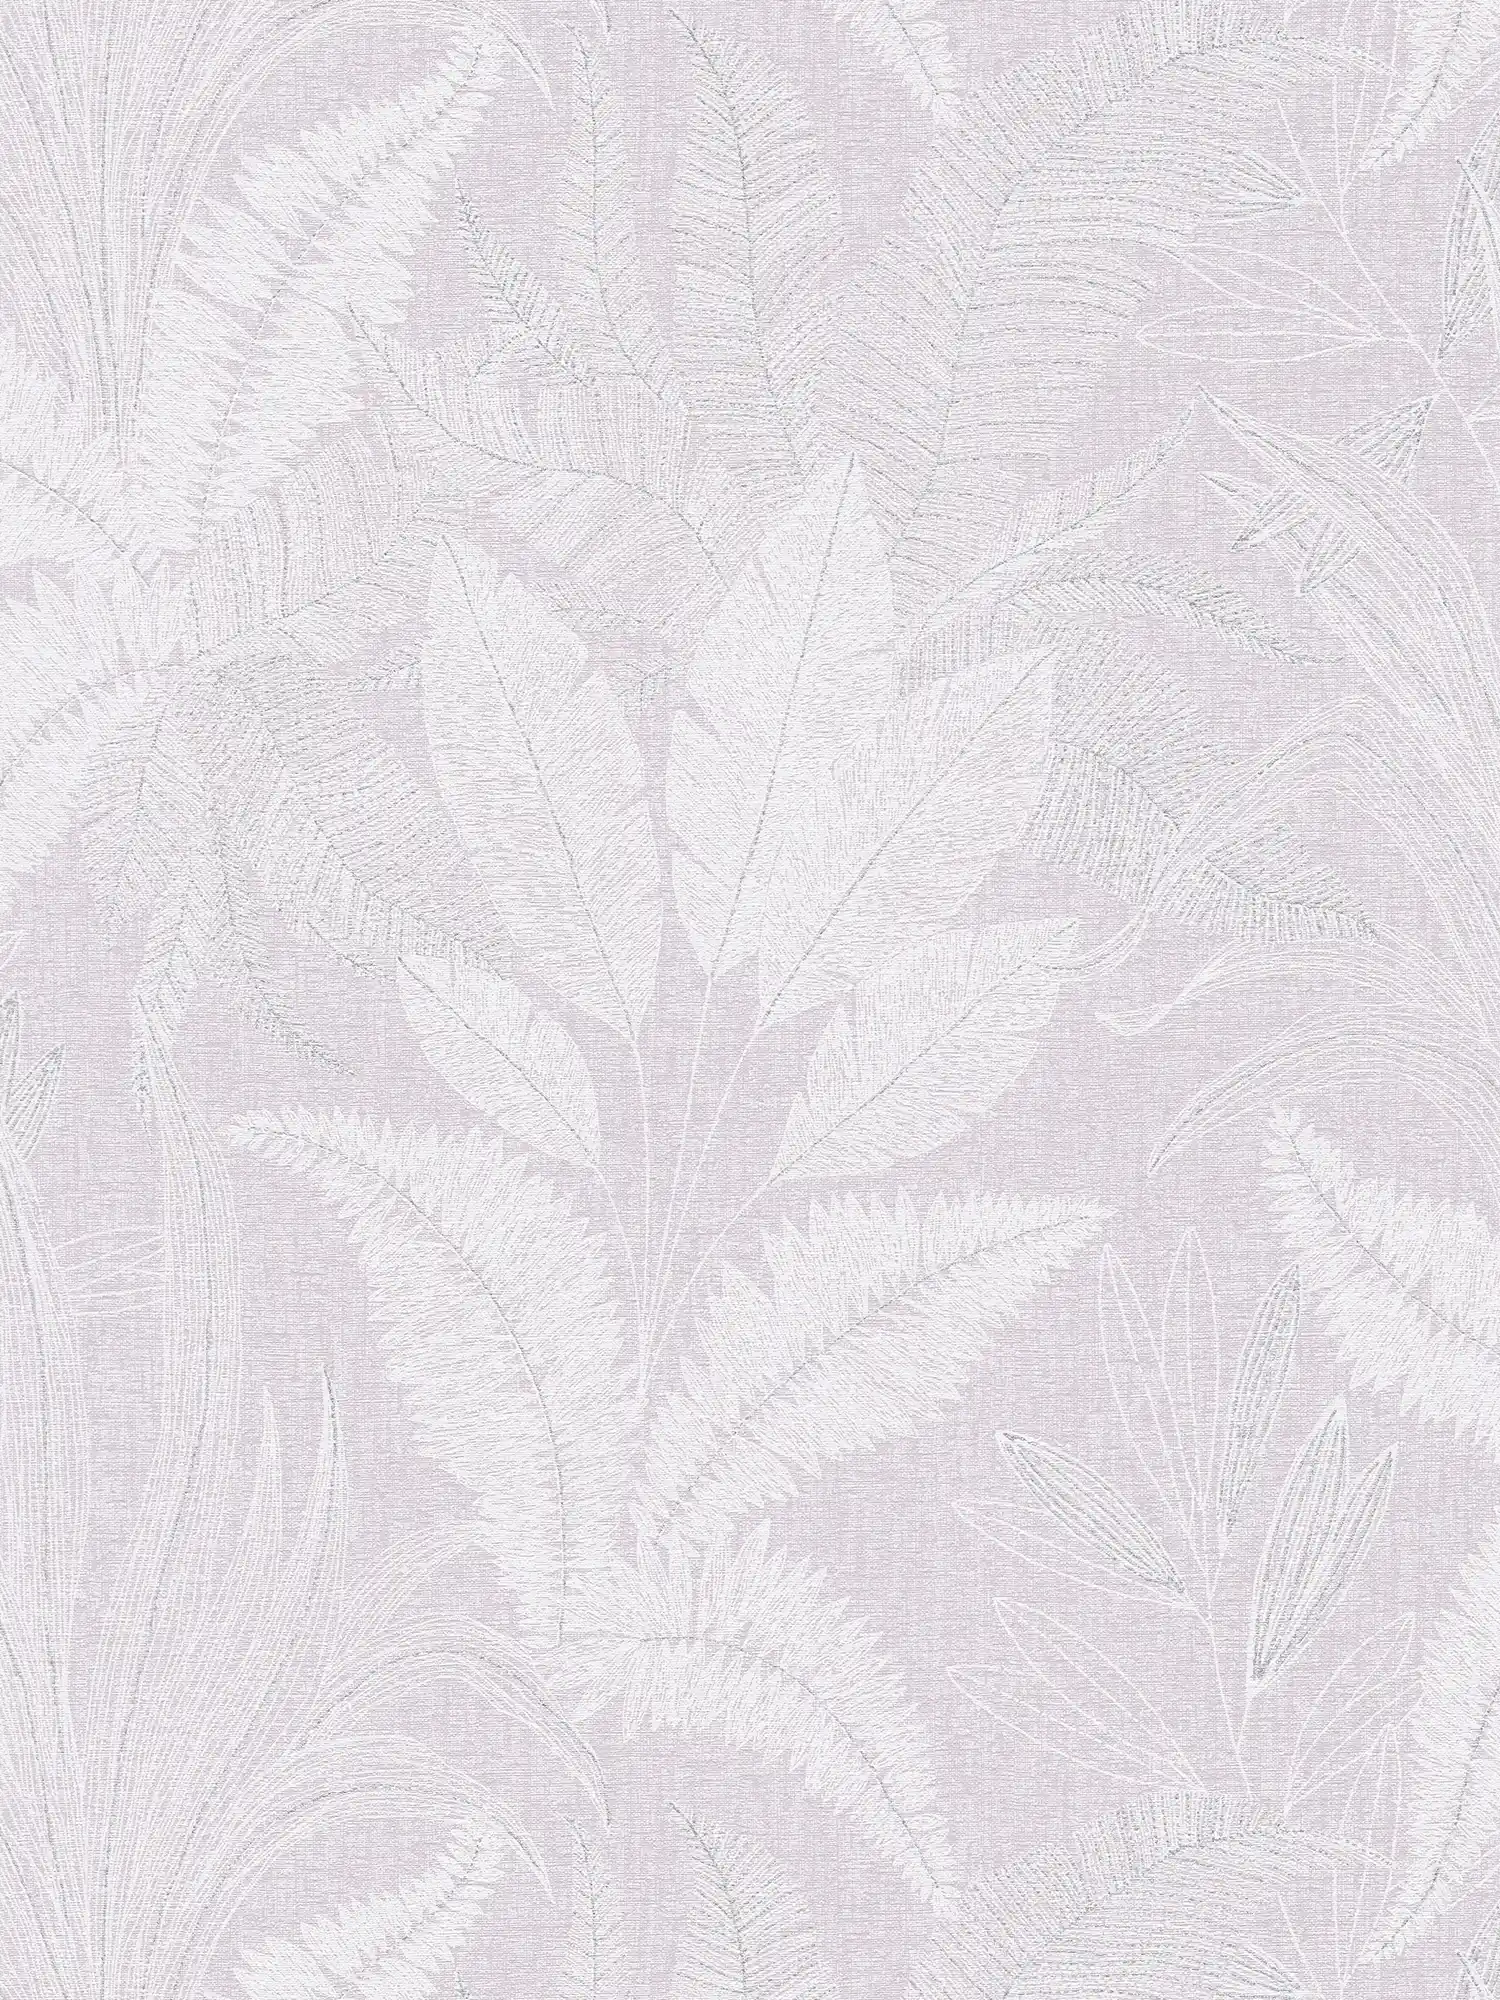 Vliestapete mit großem Blatt Muster leicht strukturiert – Violett, Weiß, Grau
